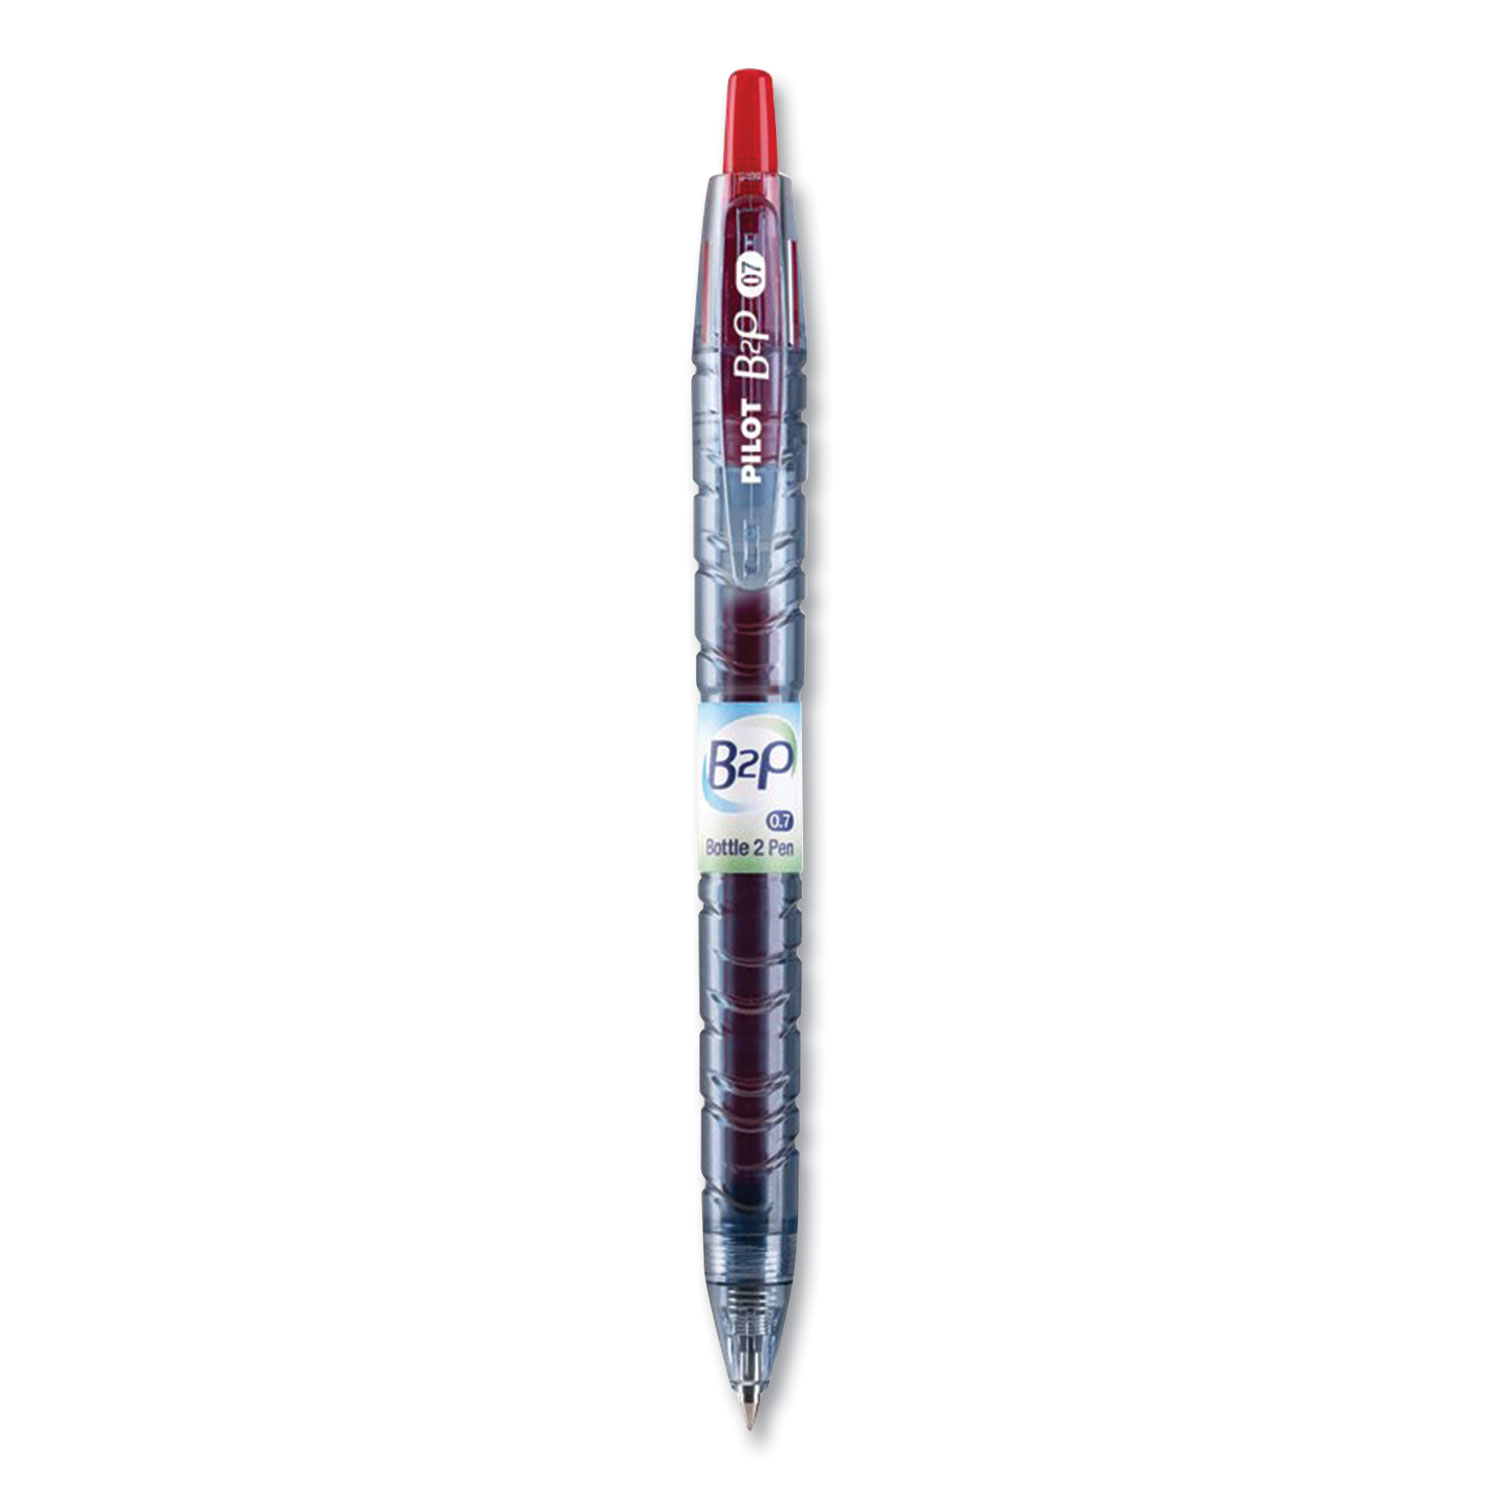  Pilot 34602 B2P Bottle-2-Pen Retractable Ballpoint Pen, 0.7 mm, Red Ink, Translucent Blue Barrel, Dozen (PIL343212) 